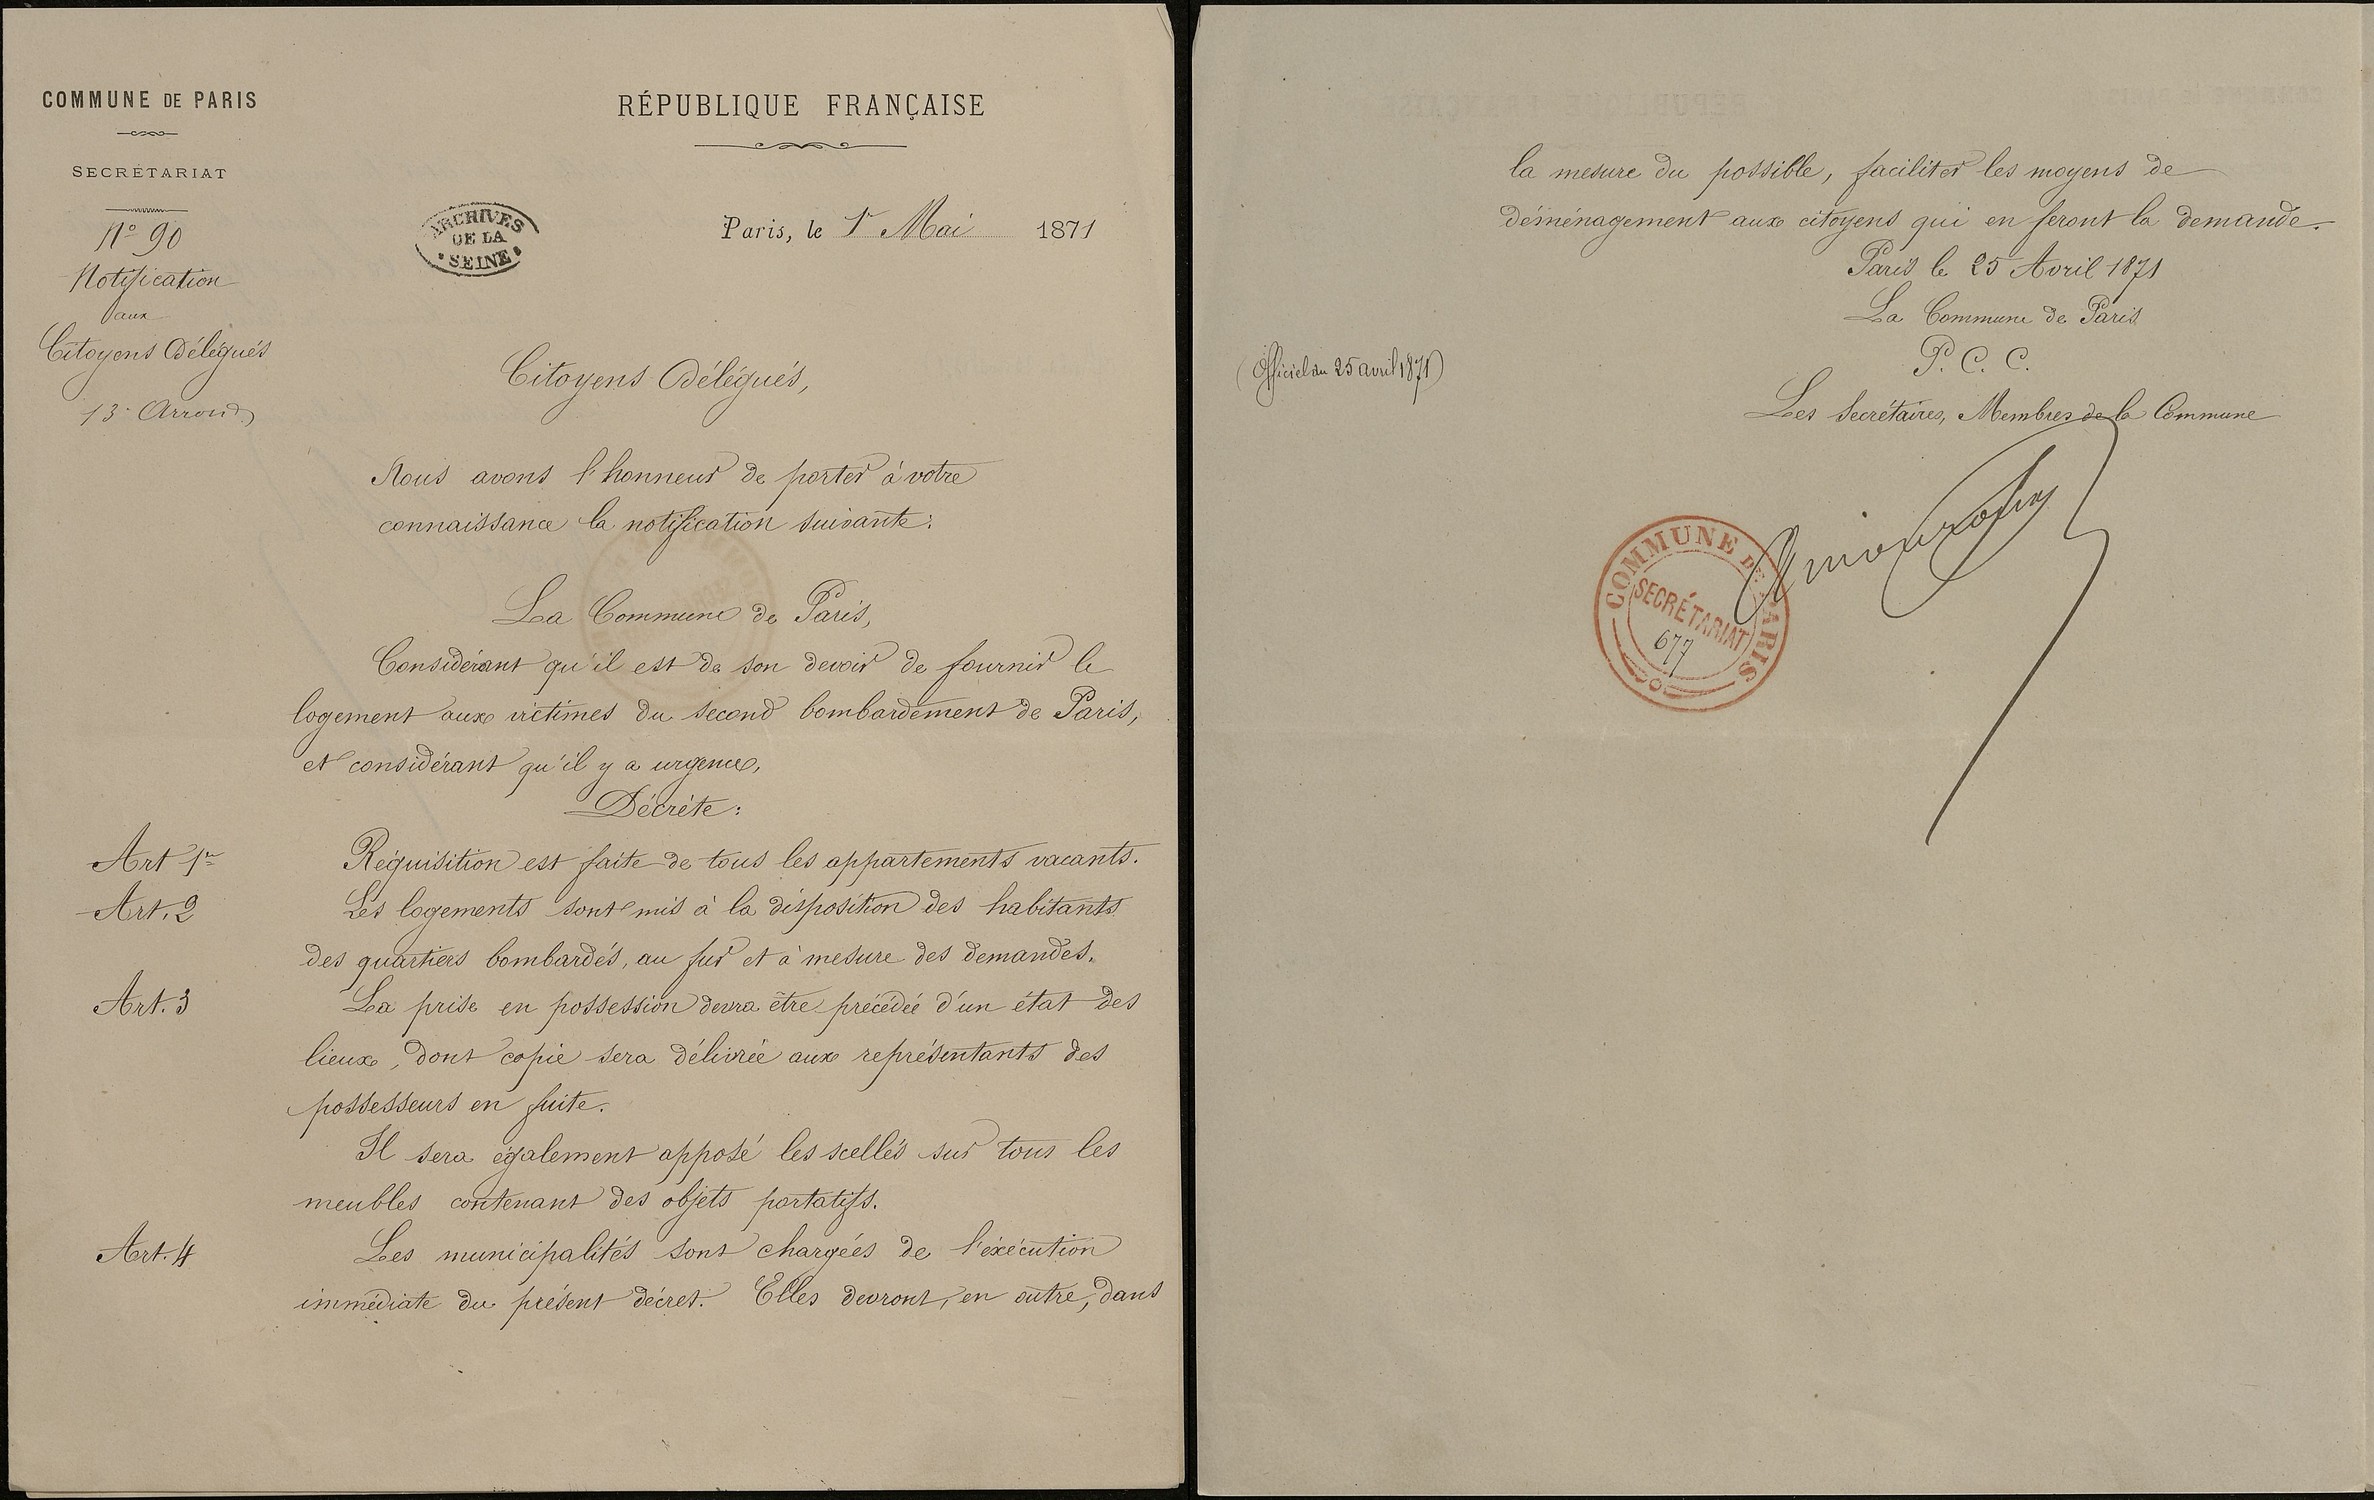 Notification aux délégués communaux du 13e arrondissement du décret sur la réquisition des logements, 1er mai 1871. Archives de Paris, VD3 14.